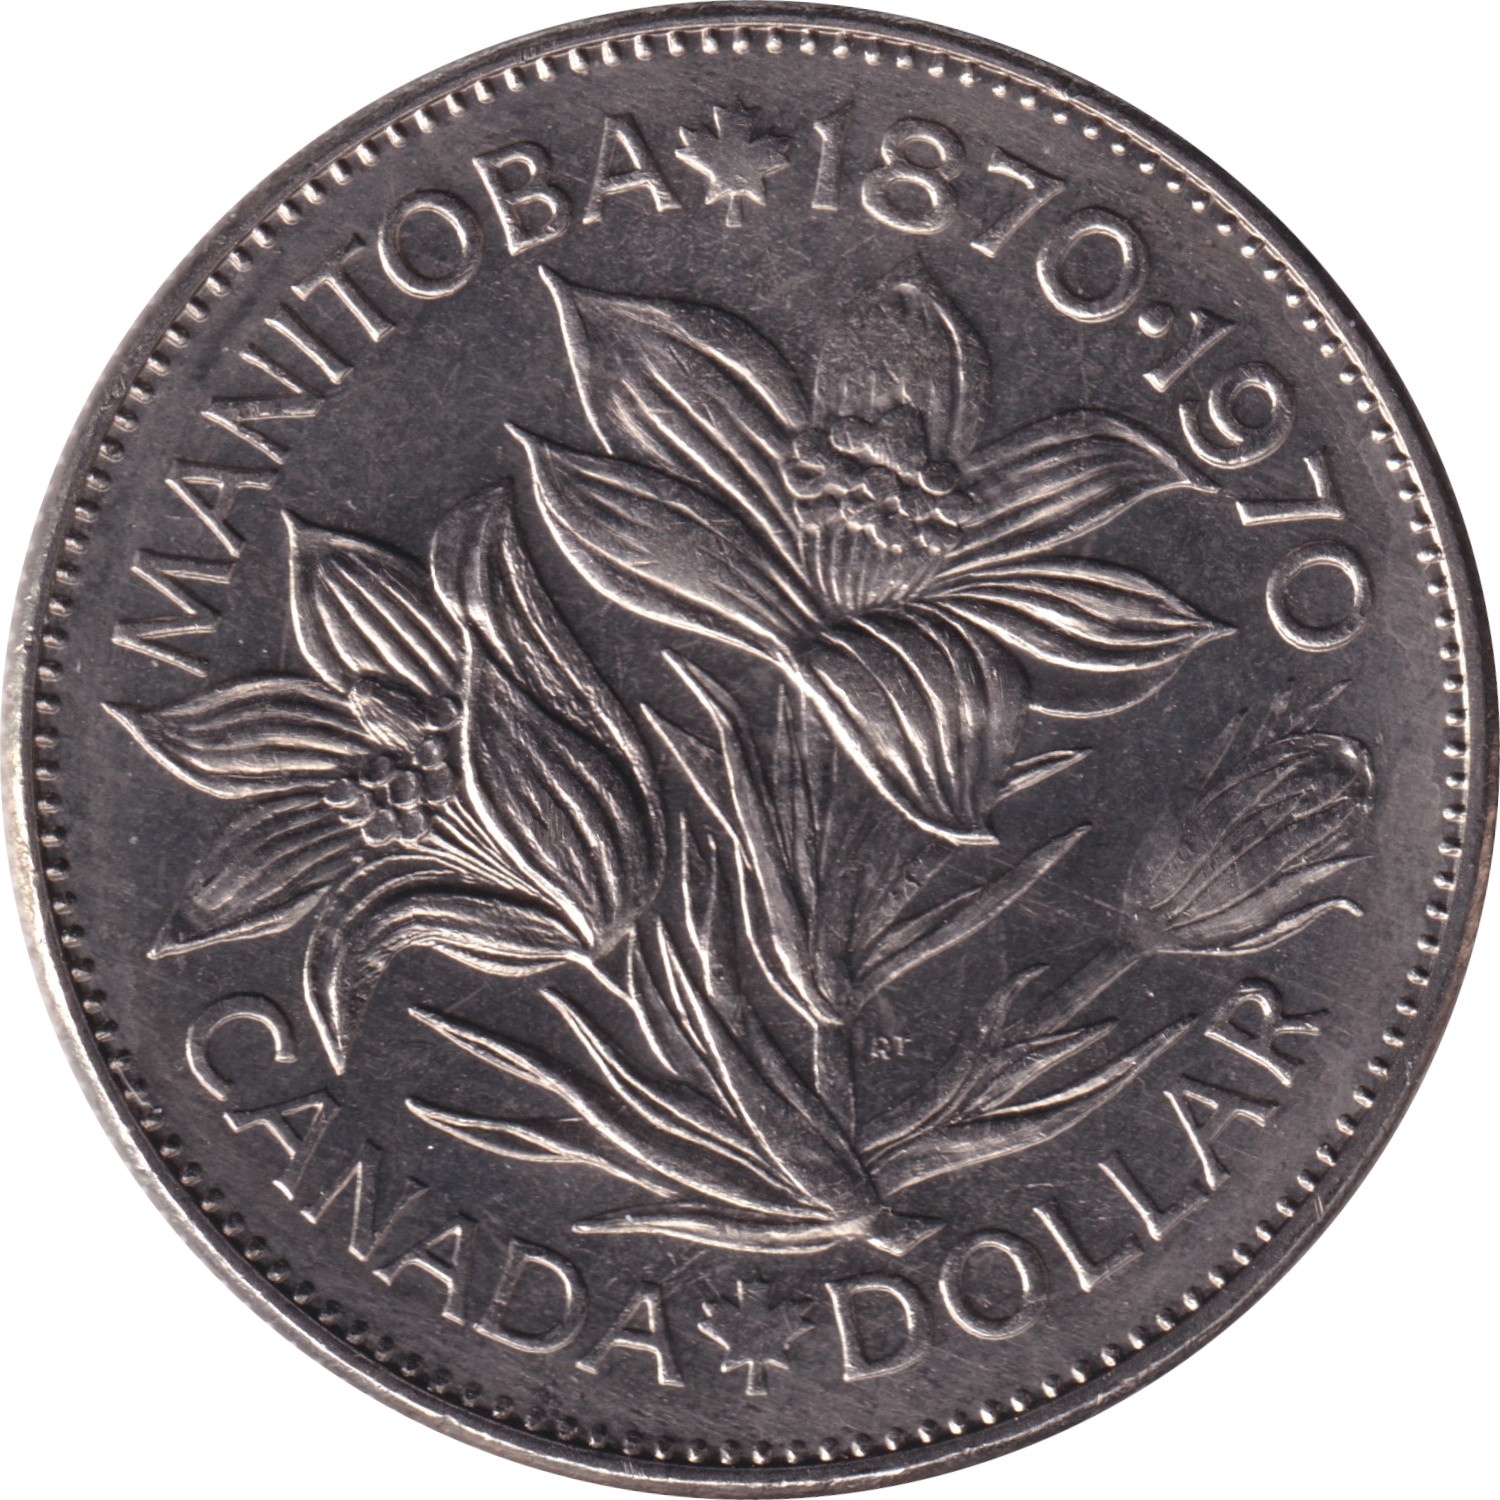 1 dollar - Manitoba